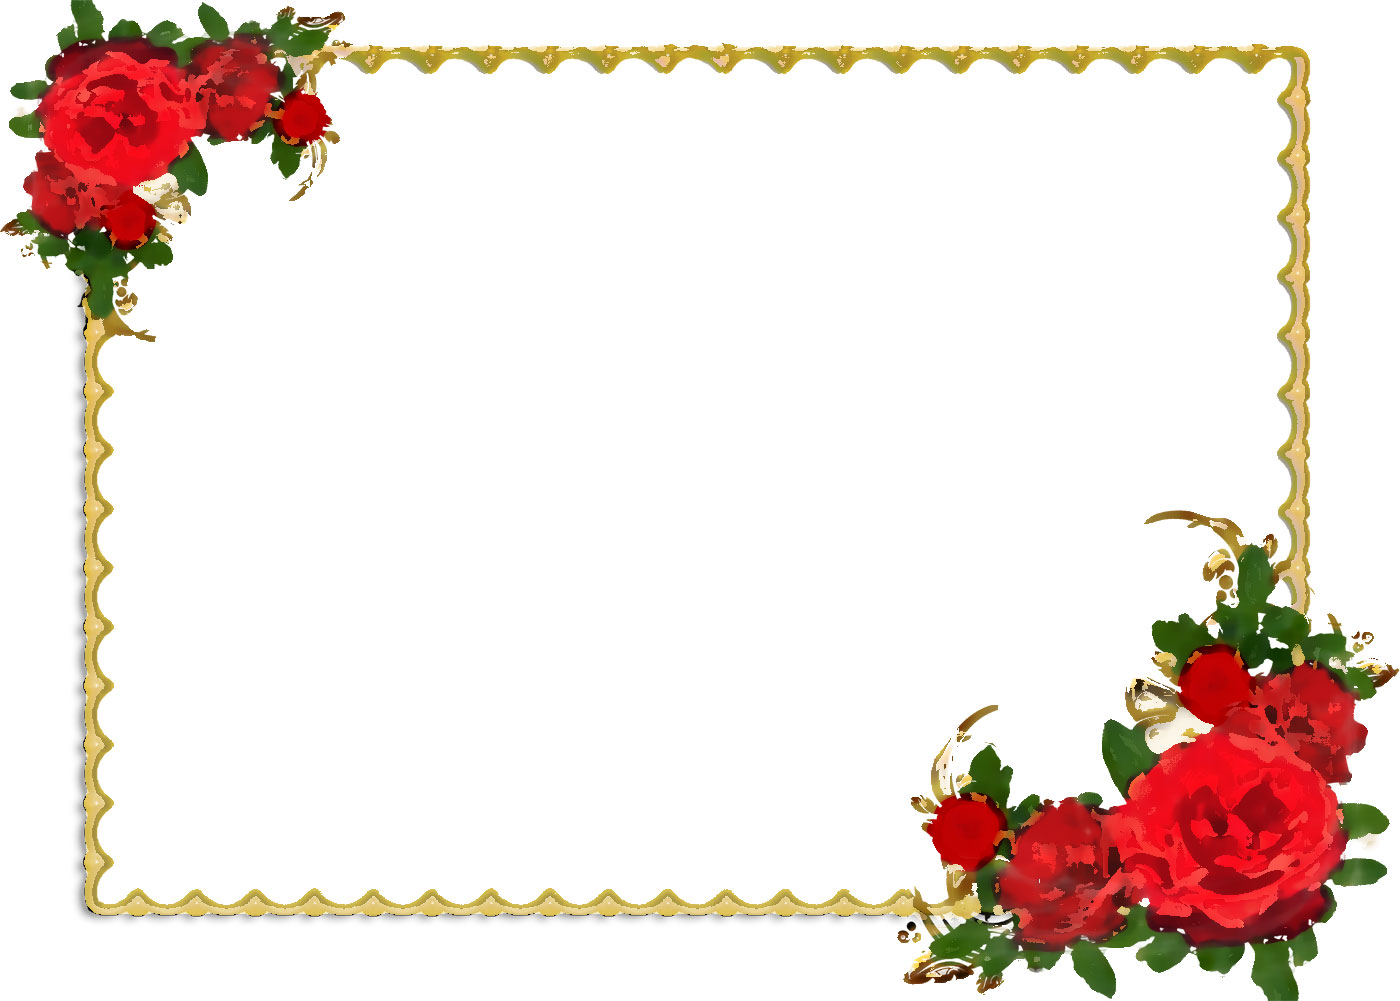 リアルな花のイラスト フリー素材 フレーム枠no 1247 赤バラ コーナー